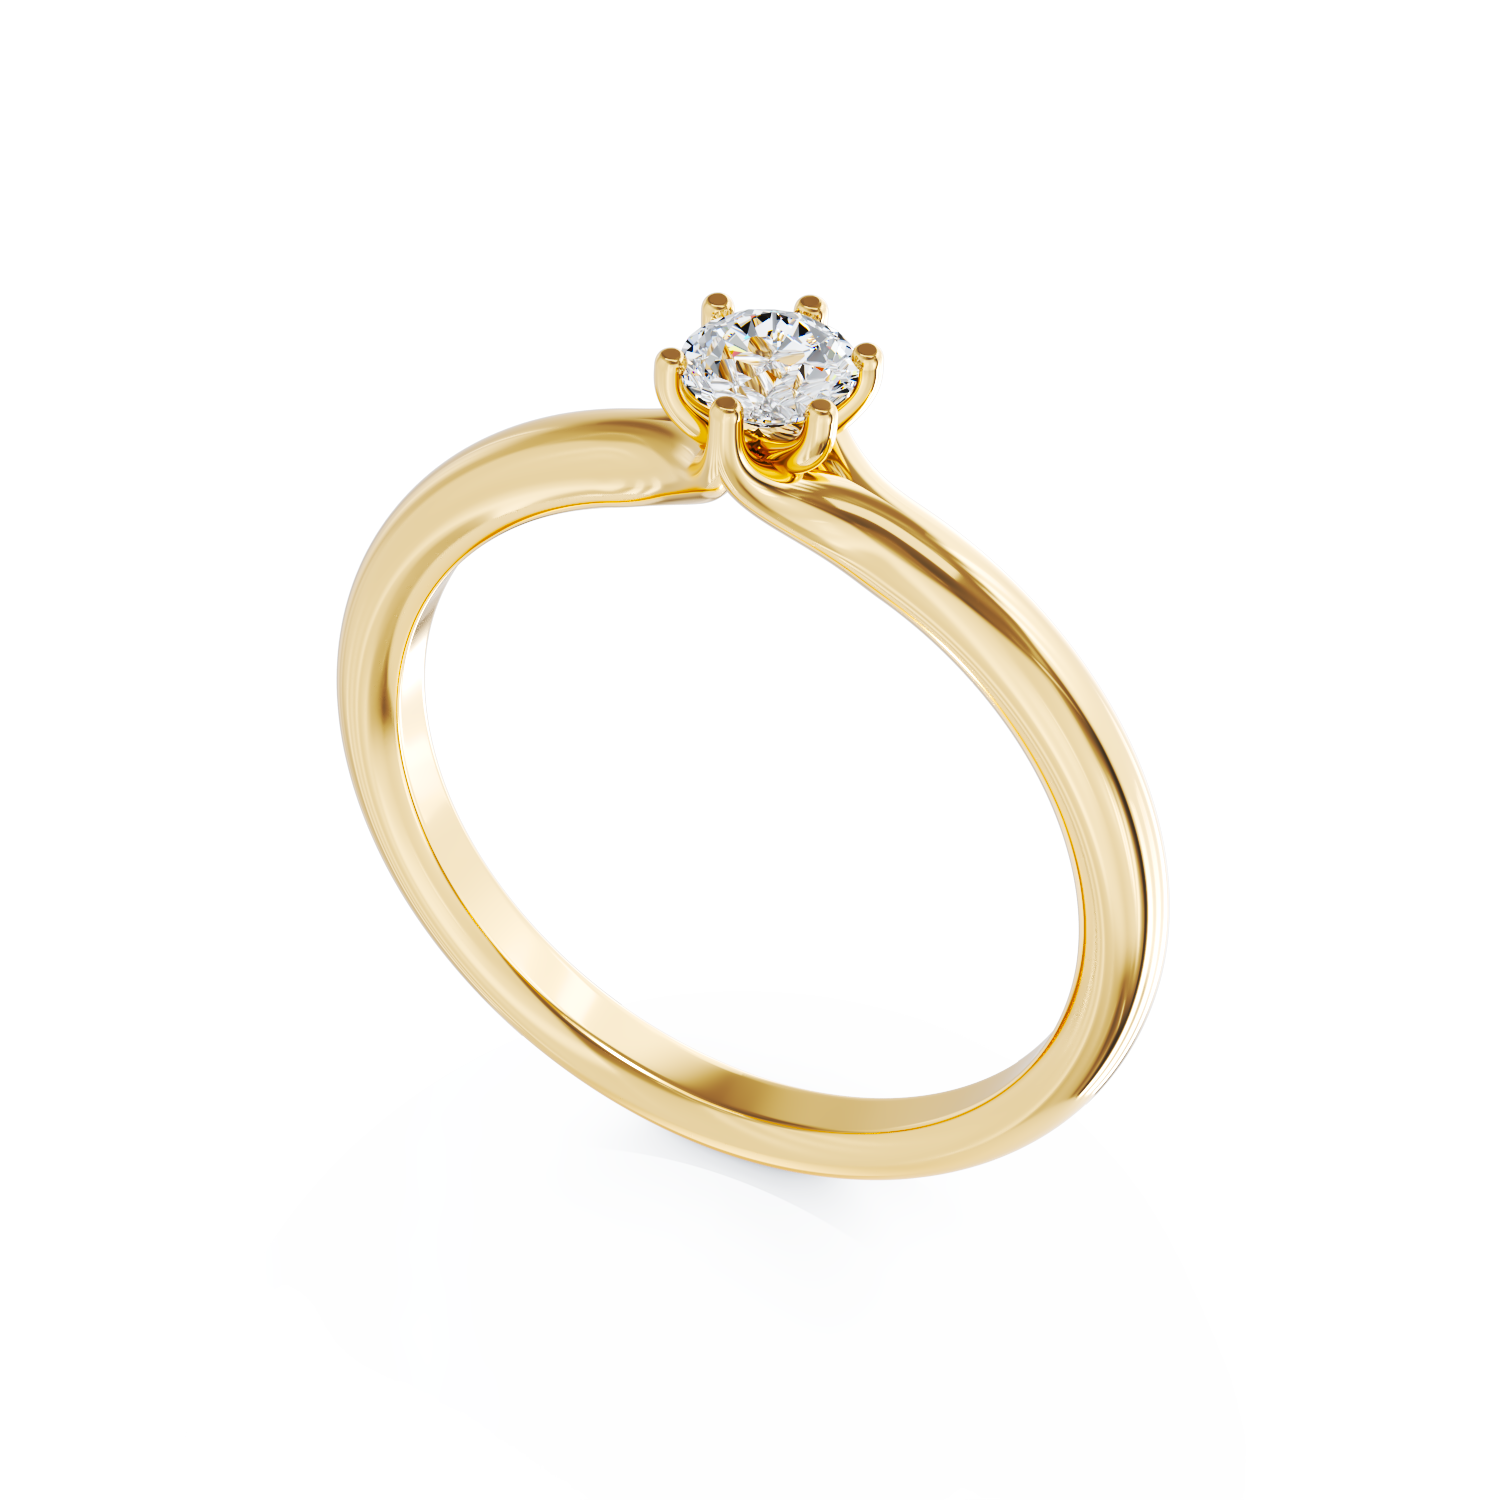 Poze Inel de logodna din aur galben de 18K cu un diamant solitaire de 0.2ct